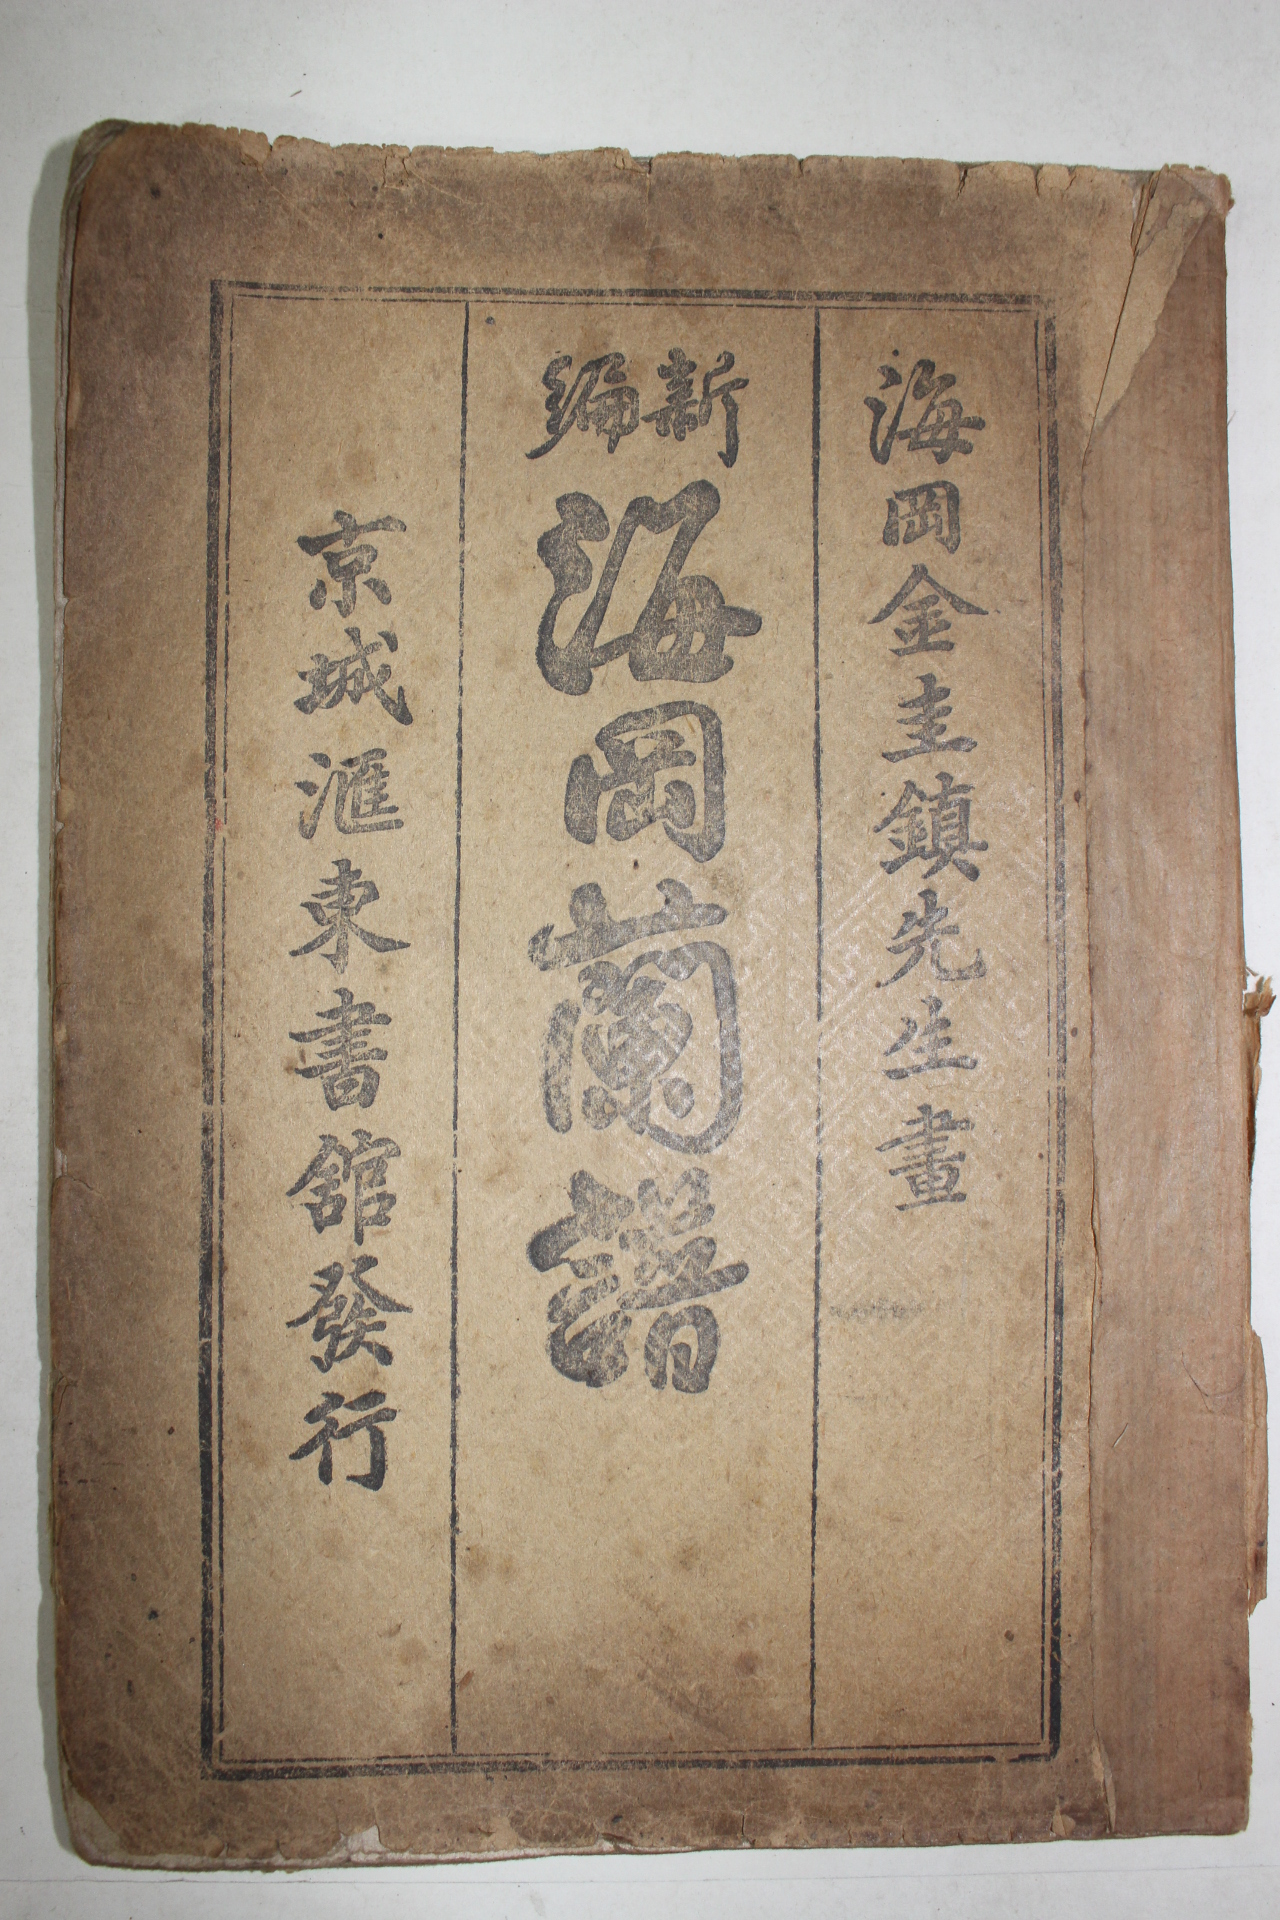 1917년 김규진(金圭鎭) 신편해강난보(新編海岡蘭譜) 1책완질